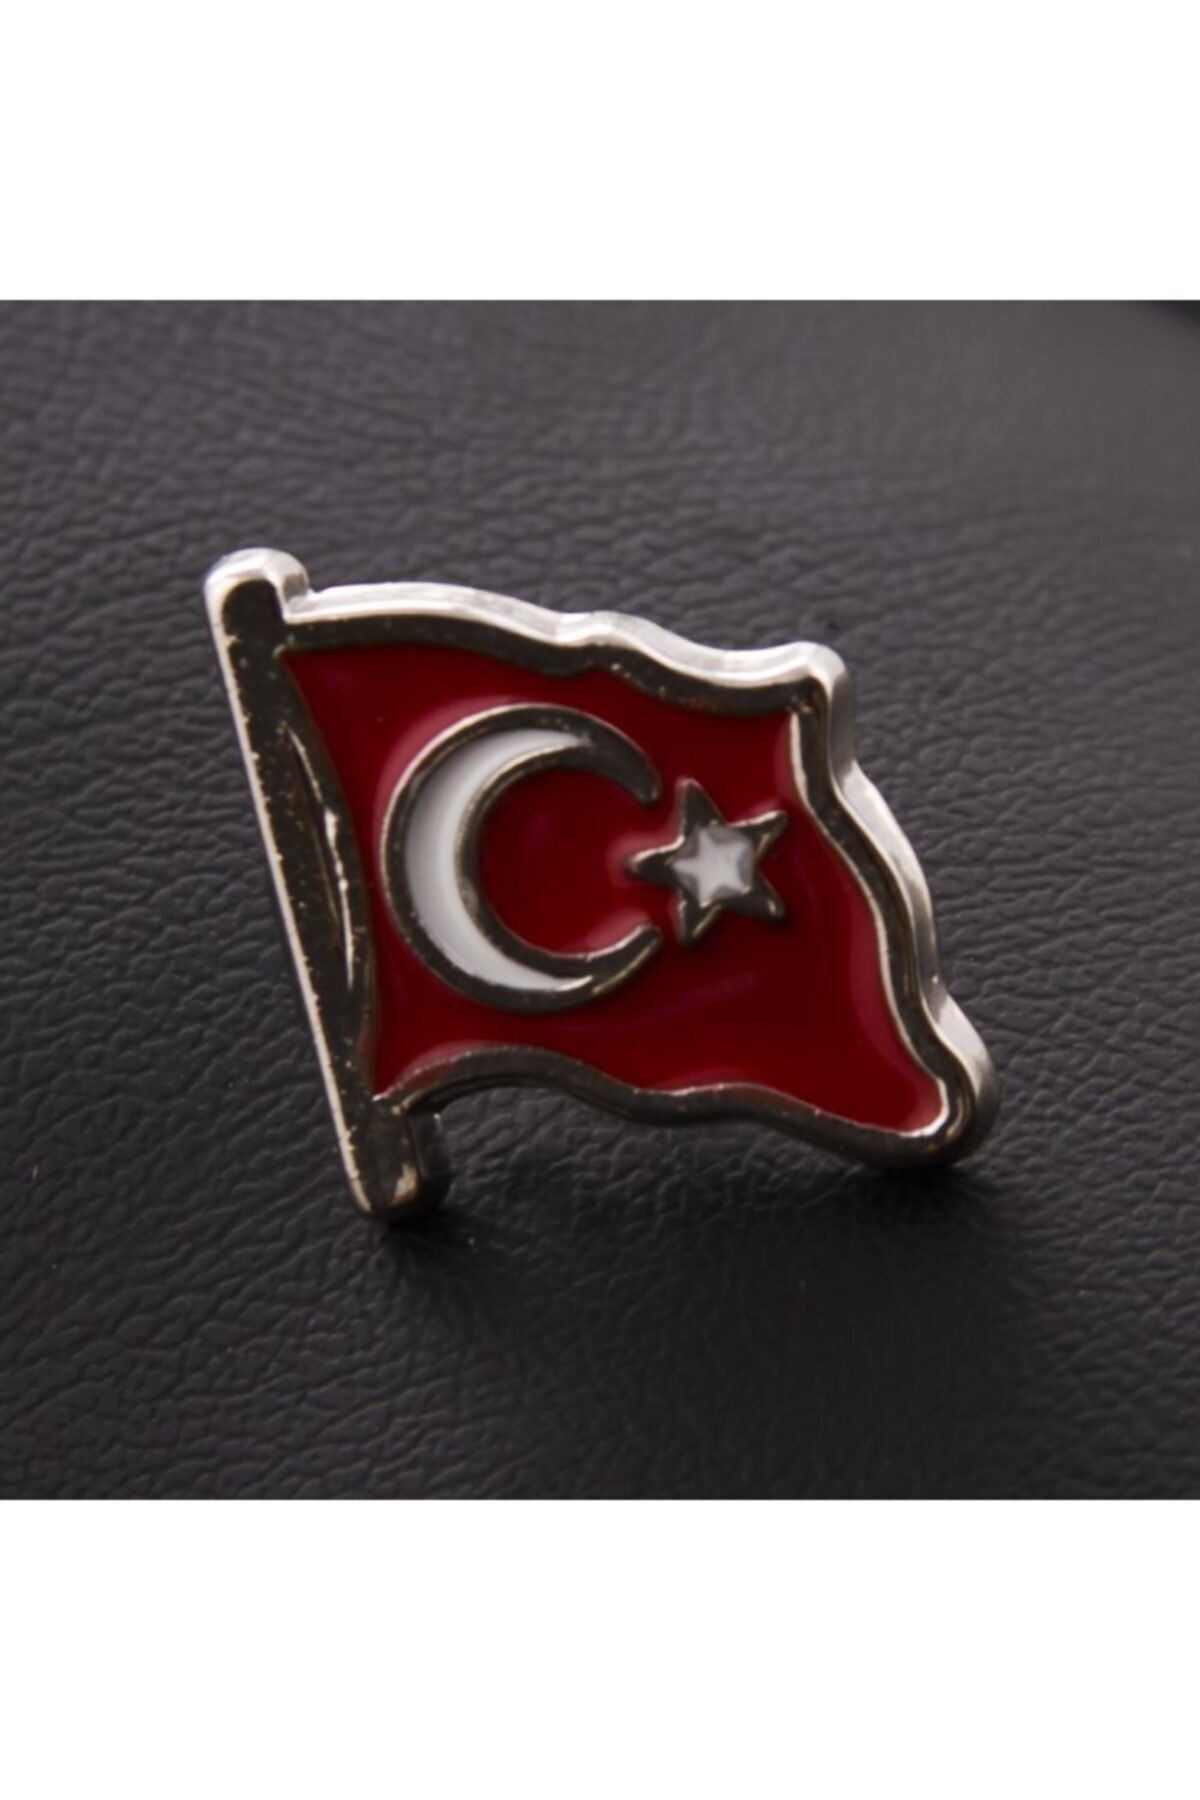 AKIN AKSESUAR HEDİYELİK Ay Yıldız Türk Bayrağı Gümüş Renk Yaka Rozet